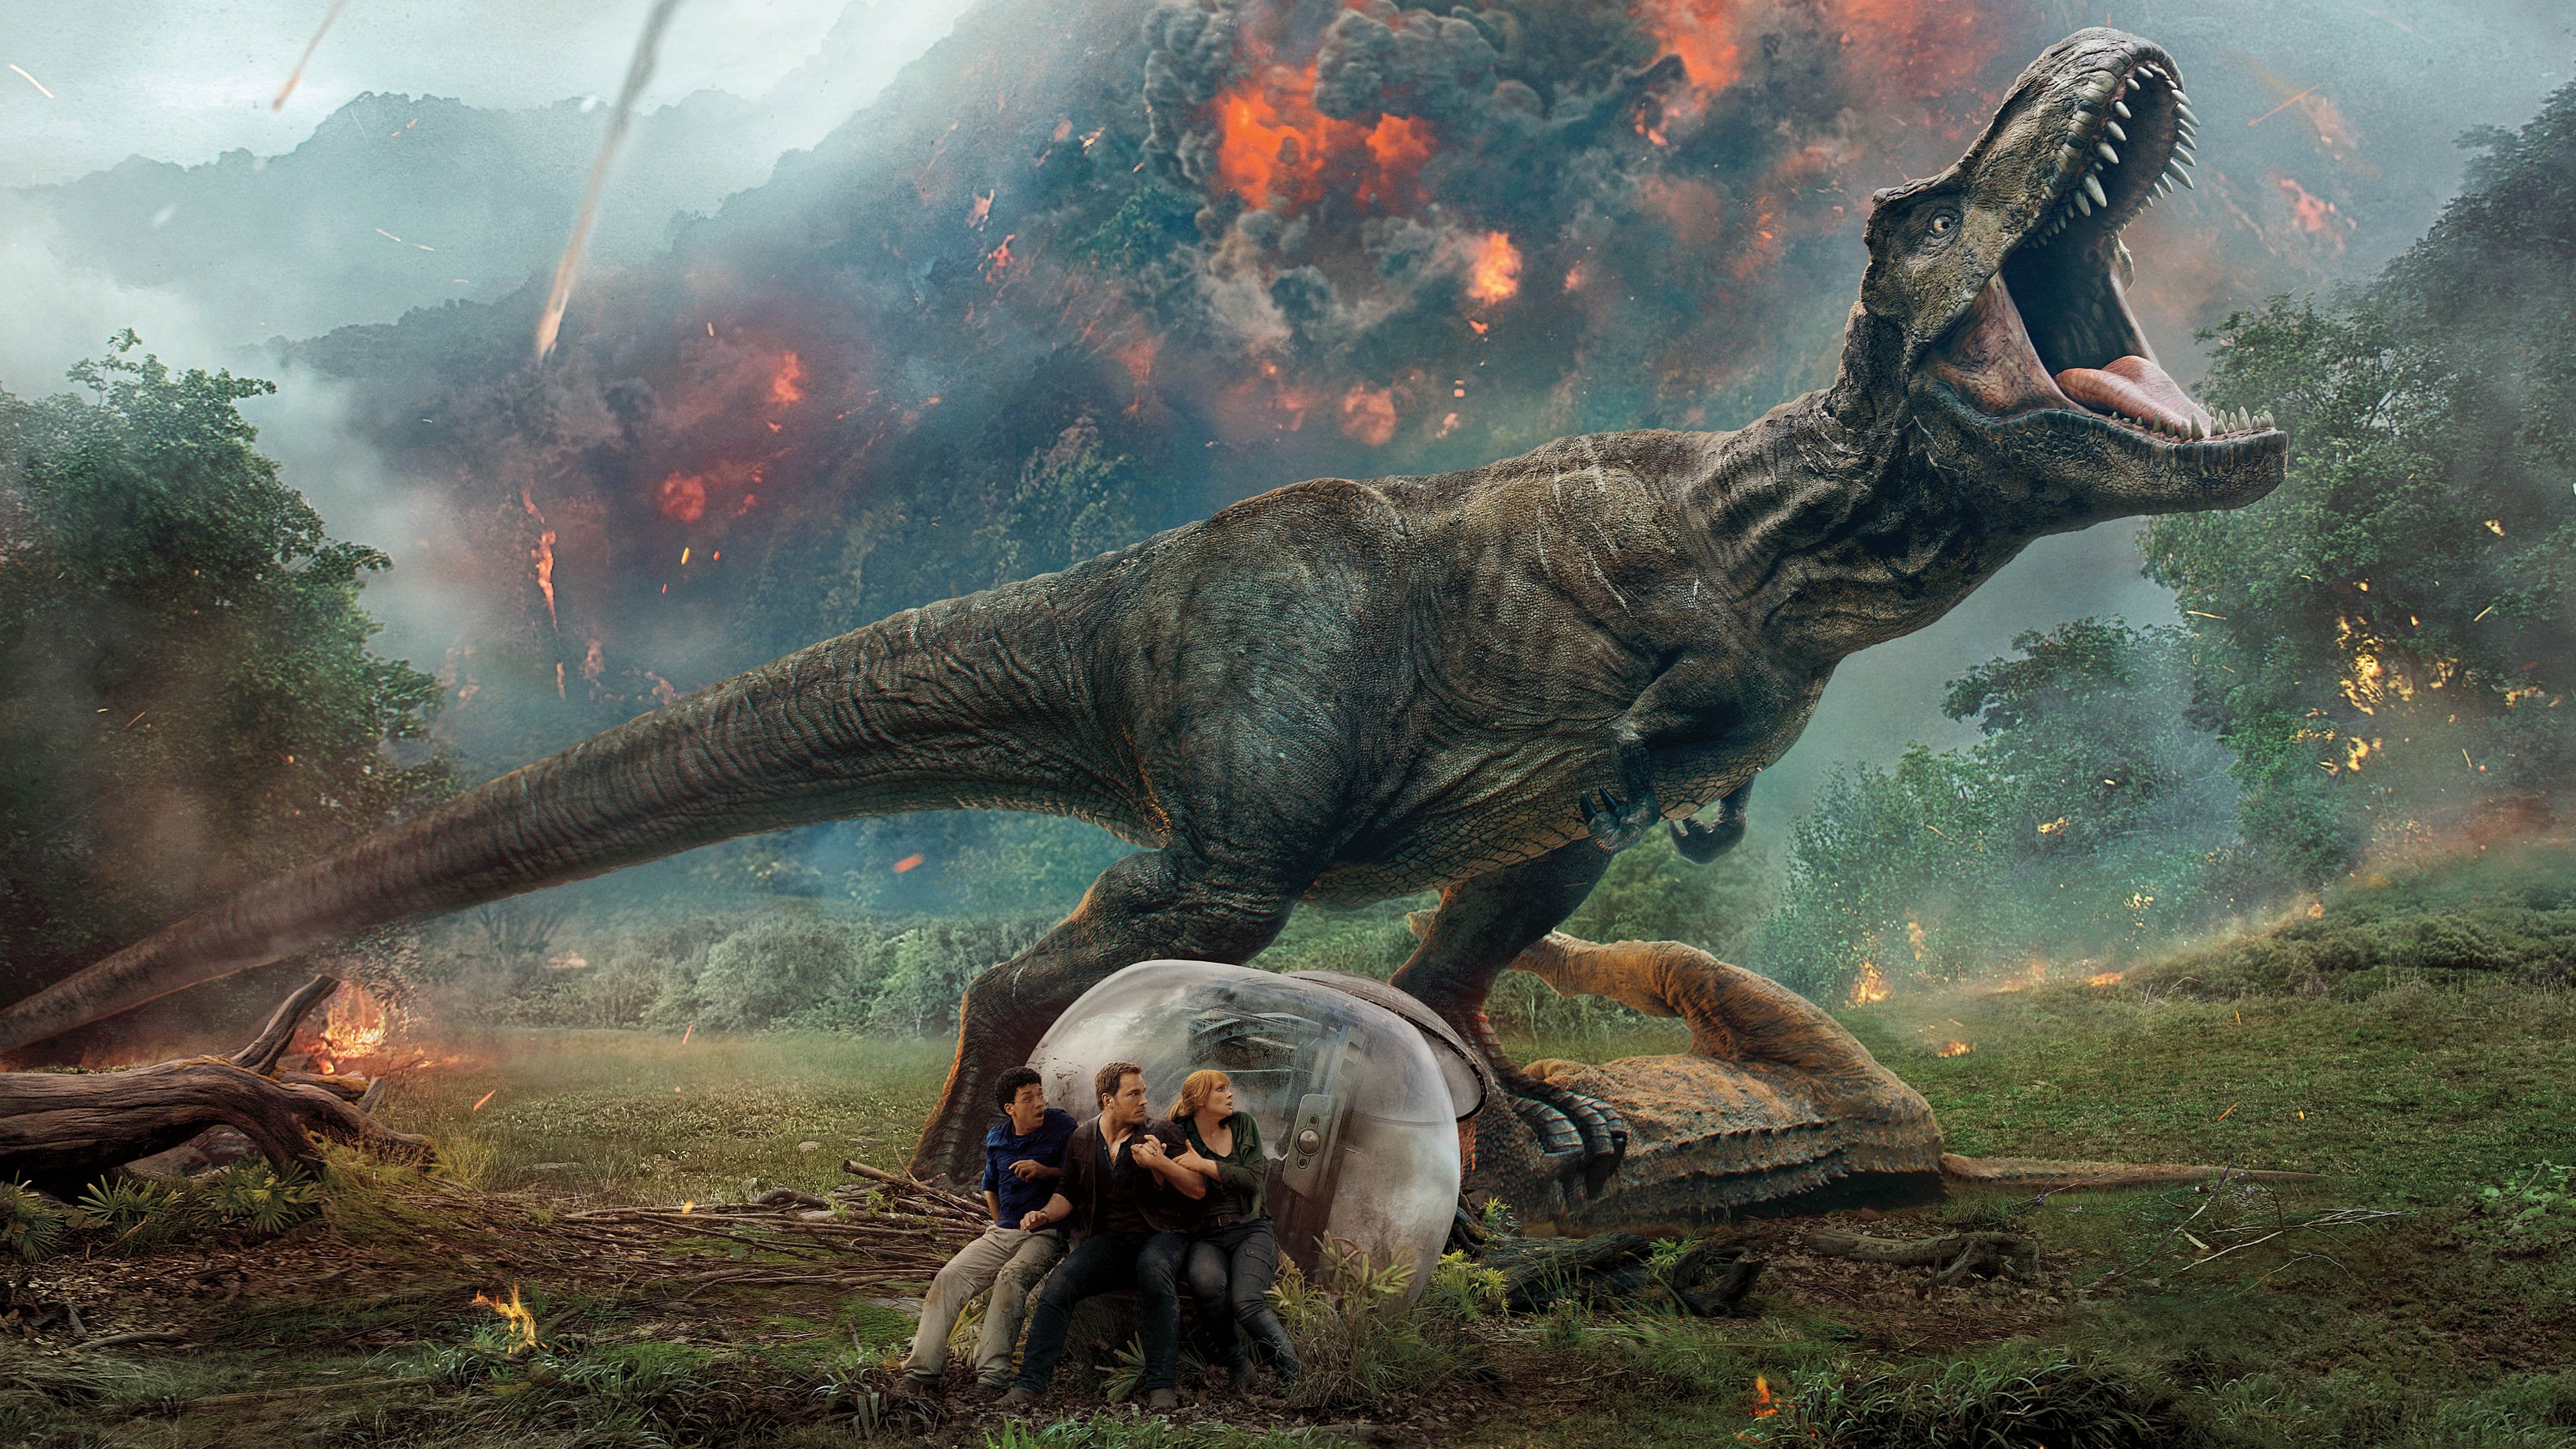 Poster Phim Thế Giới Khủng Long: Vương Quốc Sụp Đổ (Jurassic World: Fallen Kingdom)